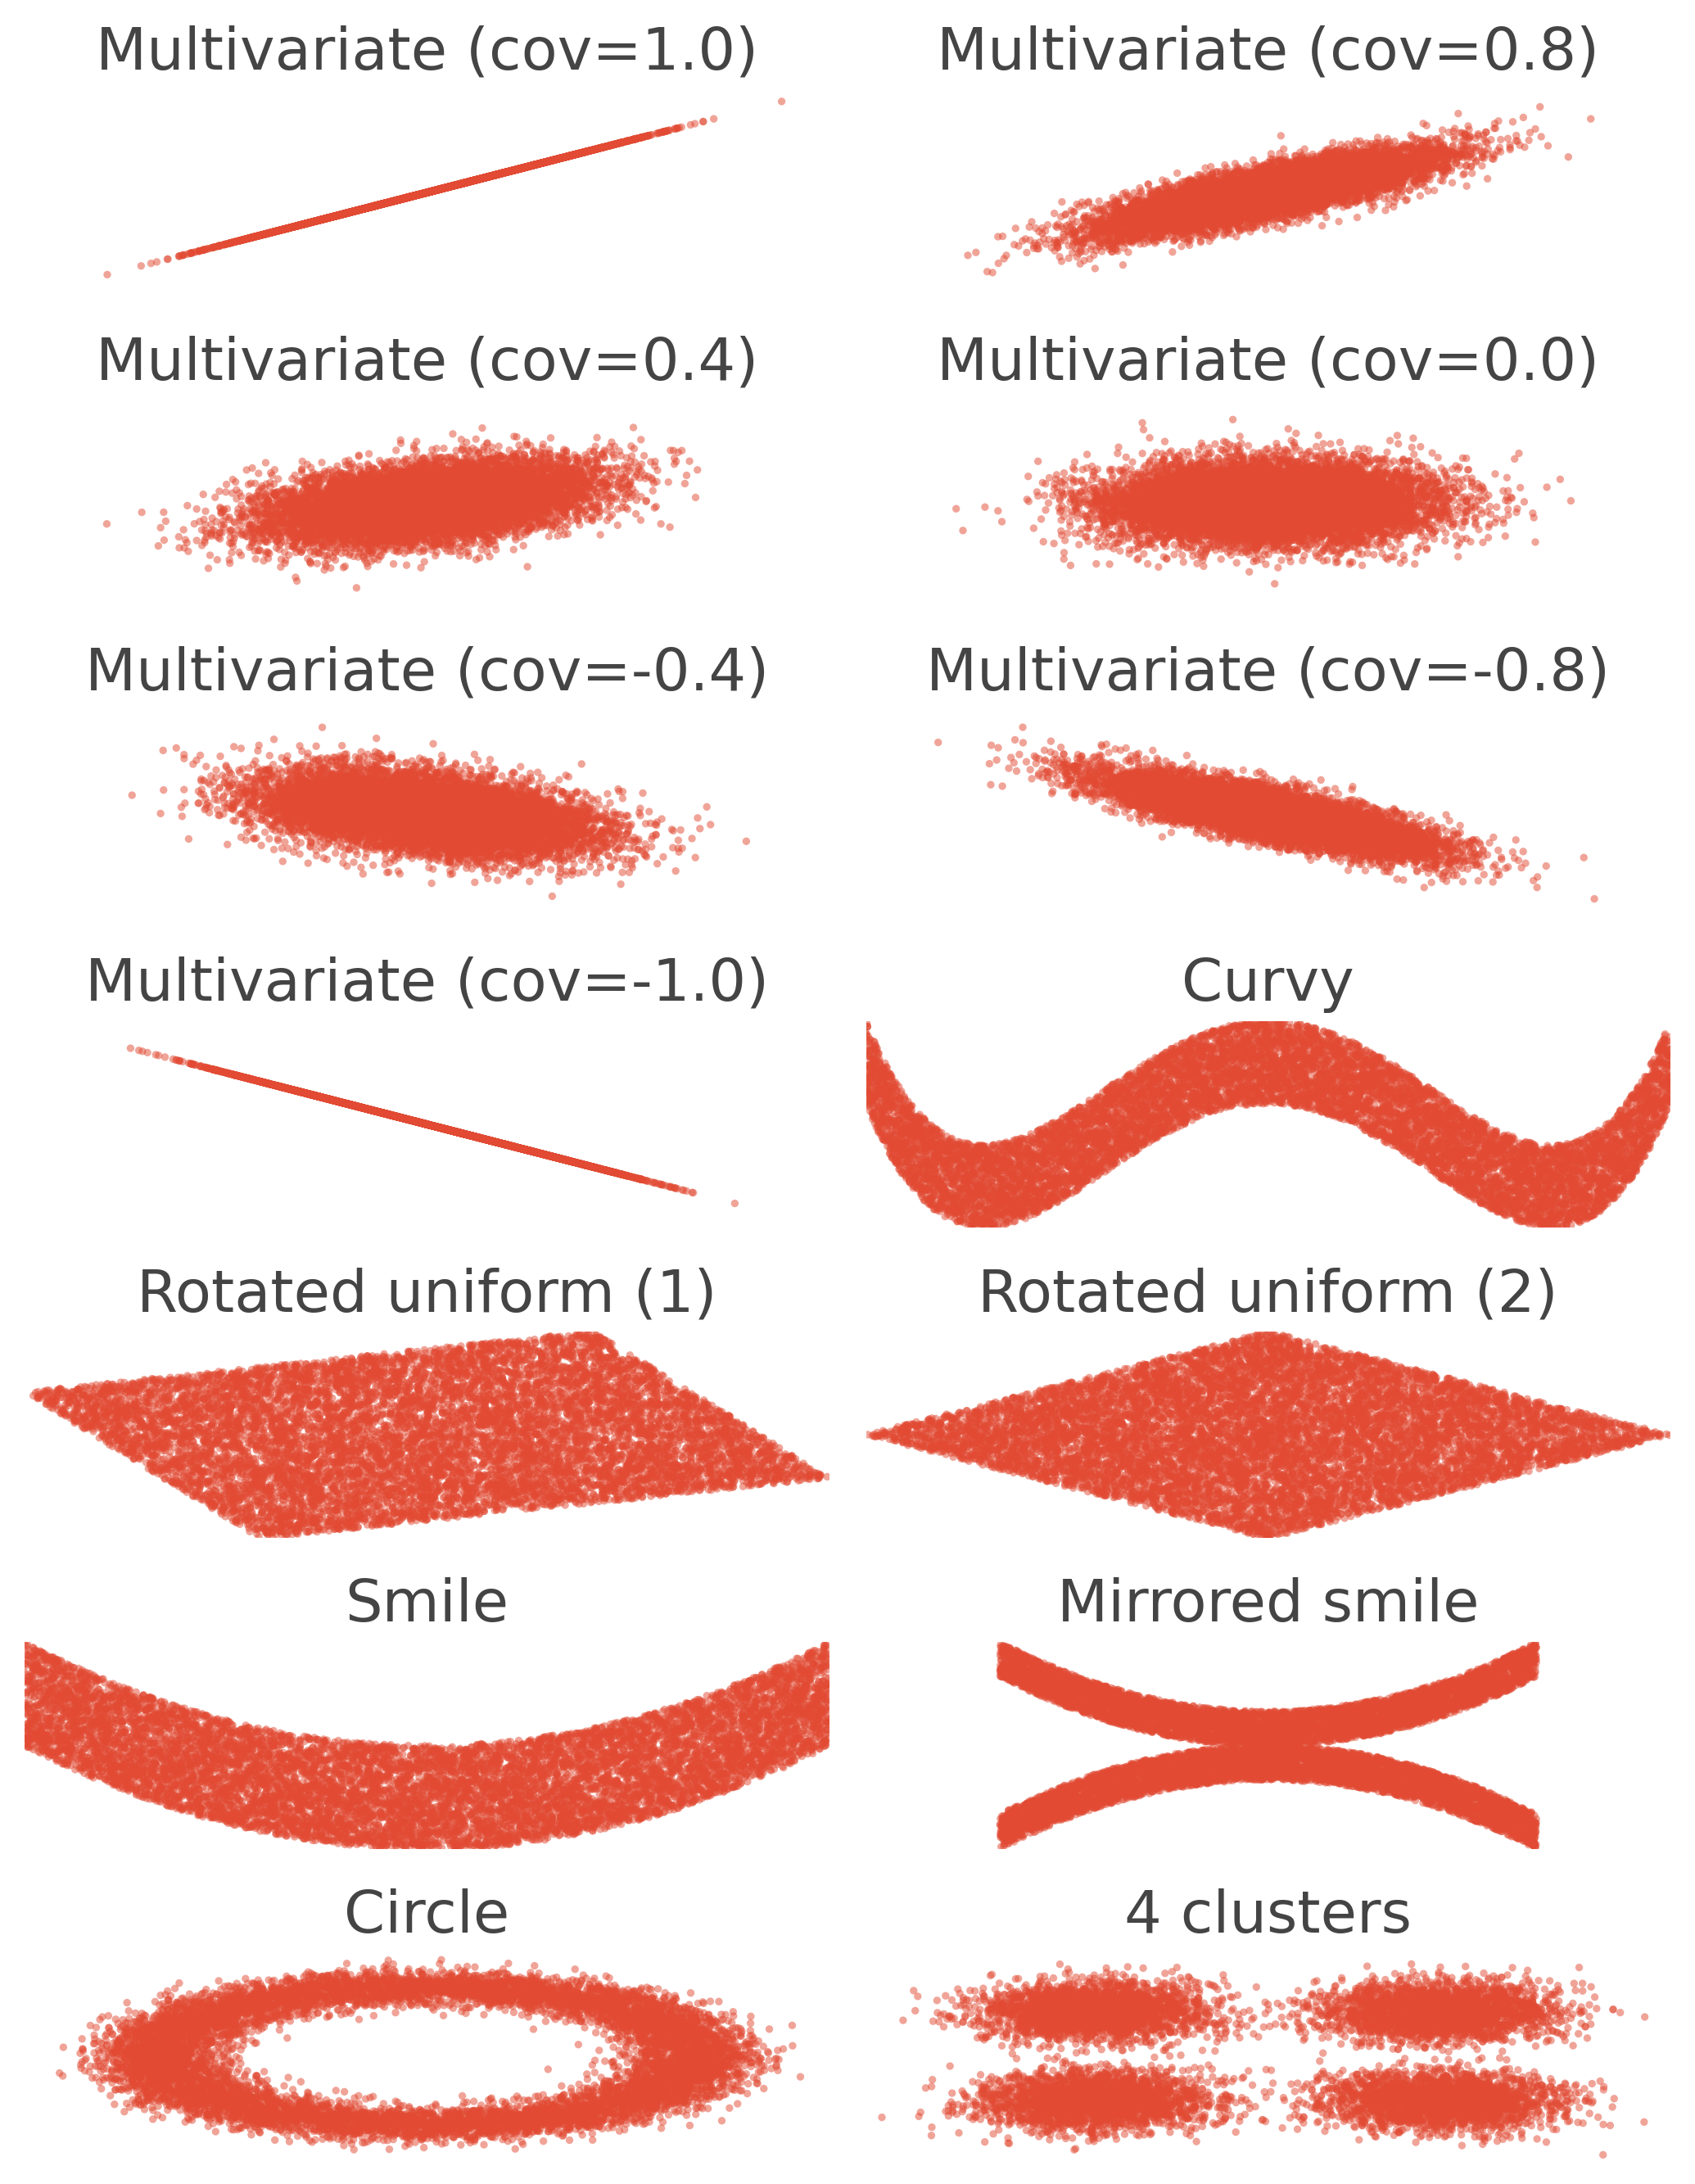 Multivariate (cov=1.0), Multivariate (cov=0.8), Multivariate (cov=0.4), Multivariate (cov=0.0), Multivariate (cov=-0.4), Multivariate (cov=-0.8), Multivariate (cov=-1.0), Curvy, Rotated uniform (1), Rotated uniform (2), Smile, Mirrored smile, Circle, 4 clusters